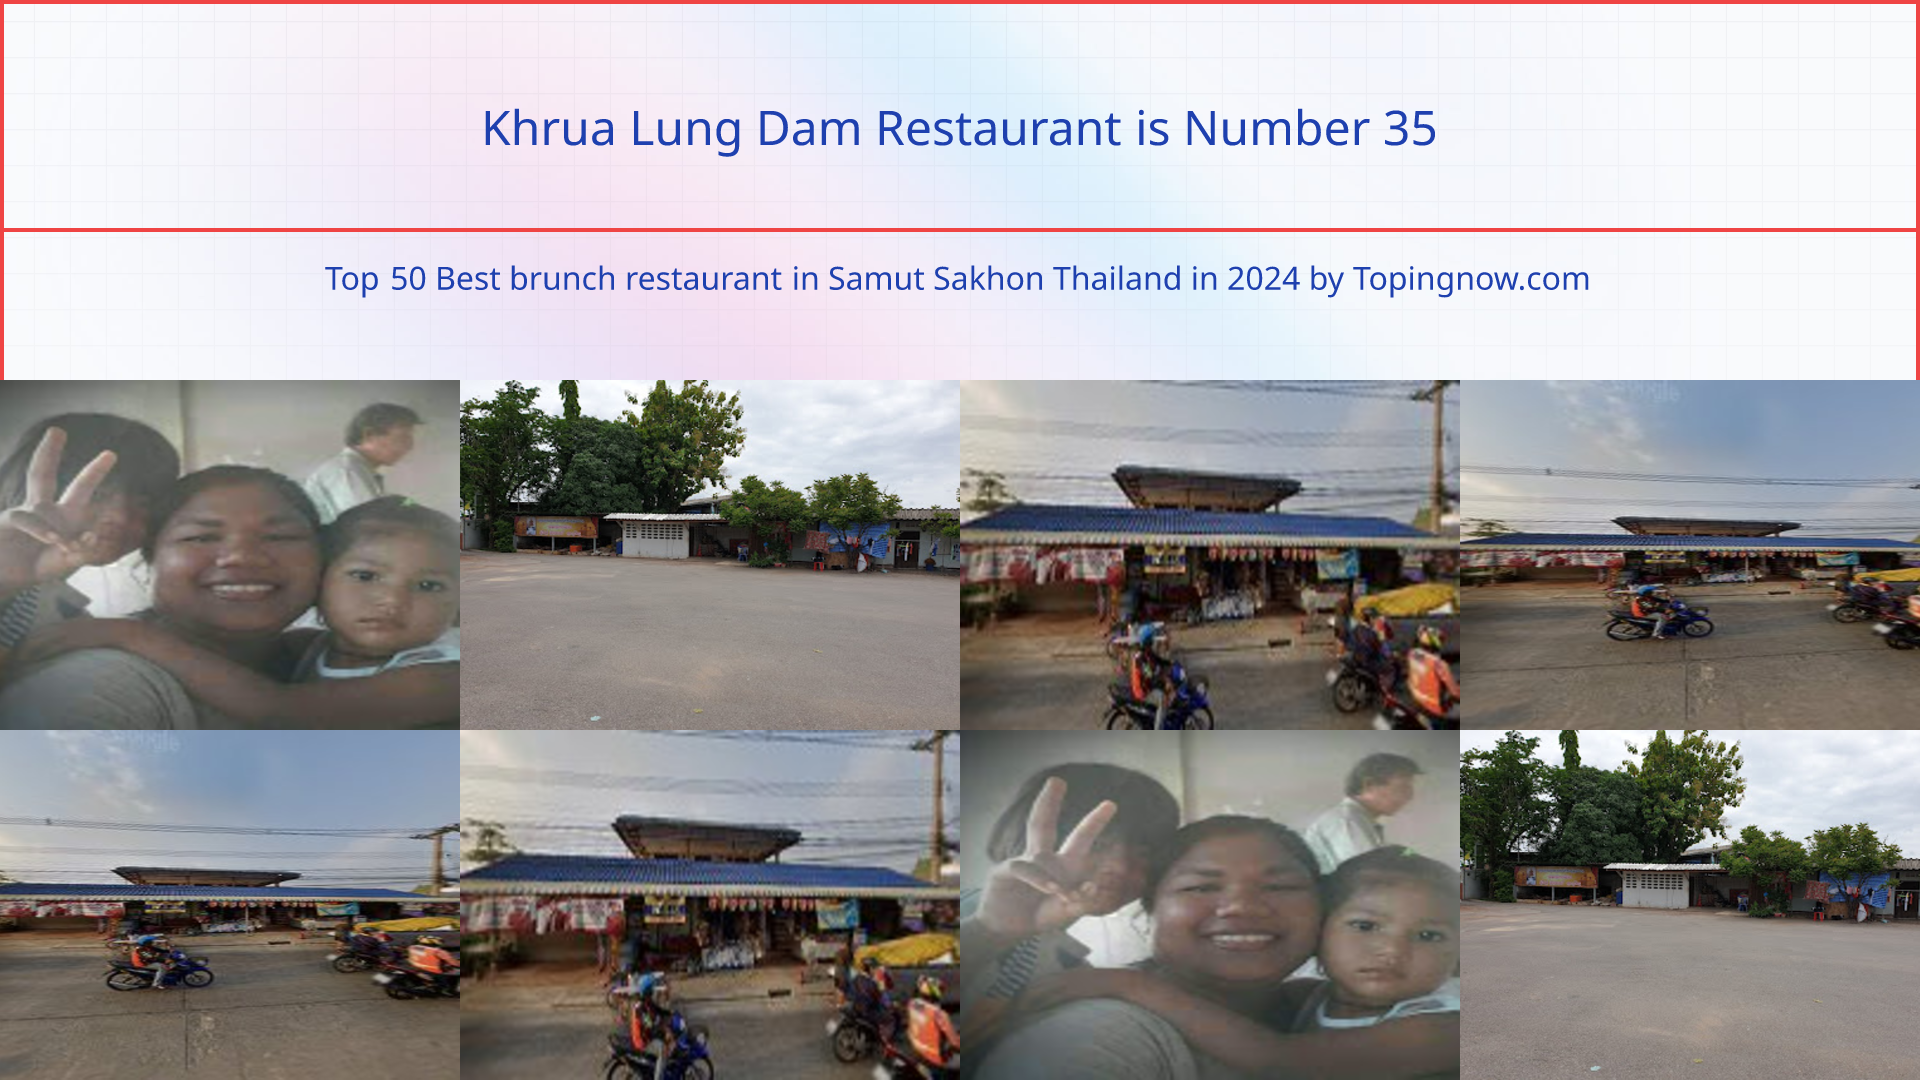 Khrua Lung Dam Restaurant: Top 50 Best brunch restaurant in Samut Sakhon Thailand in 2024